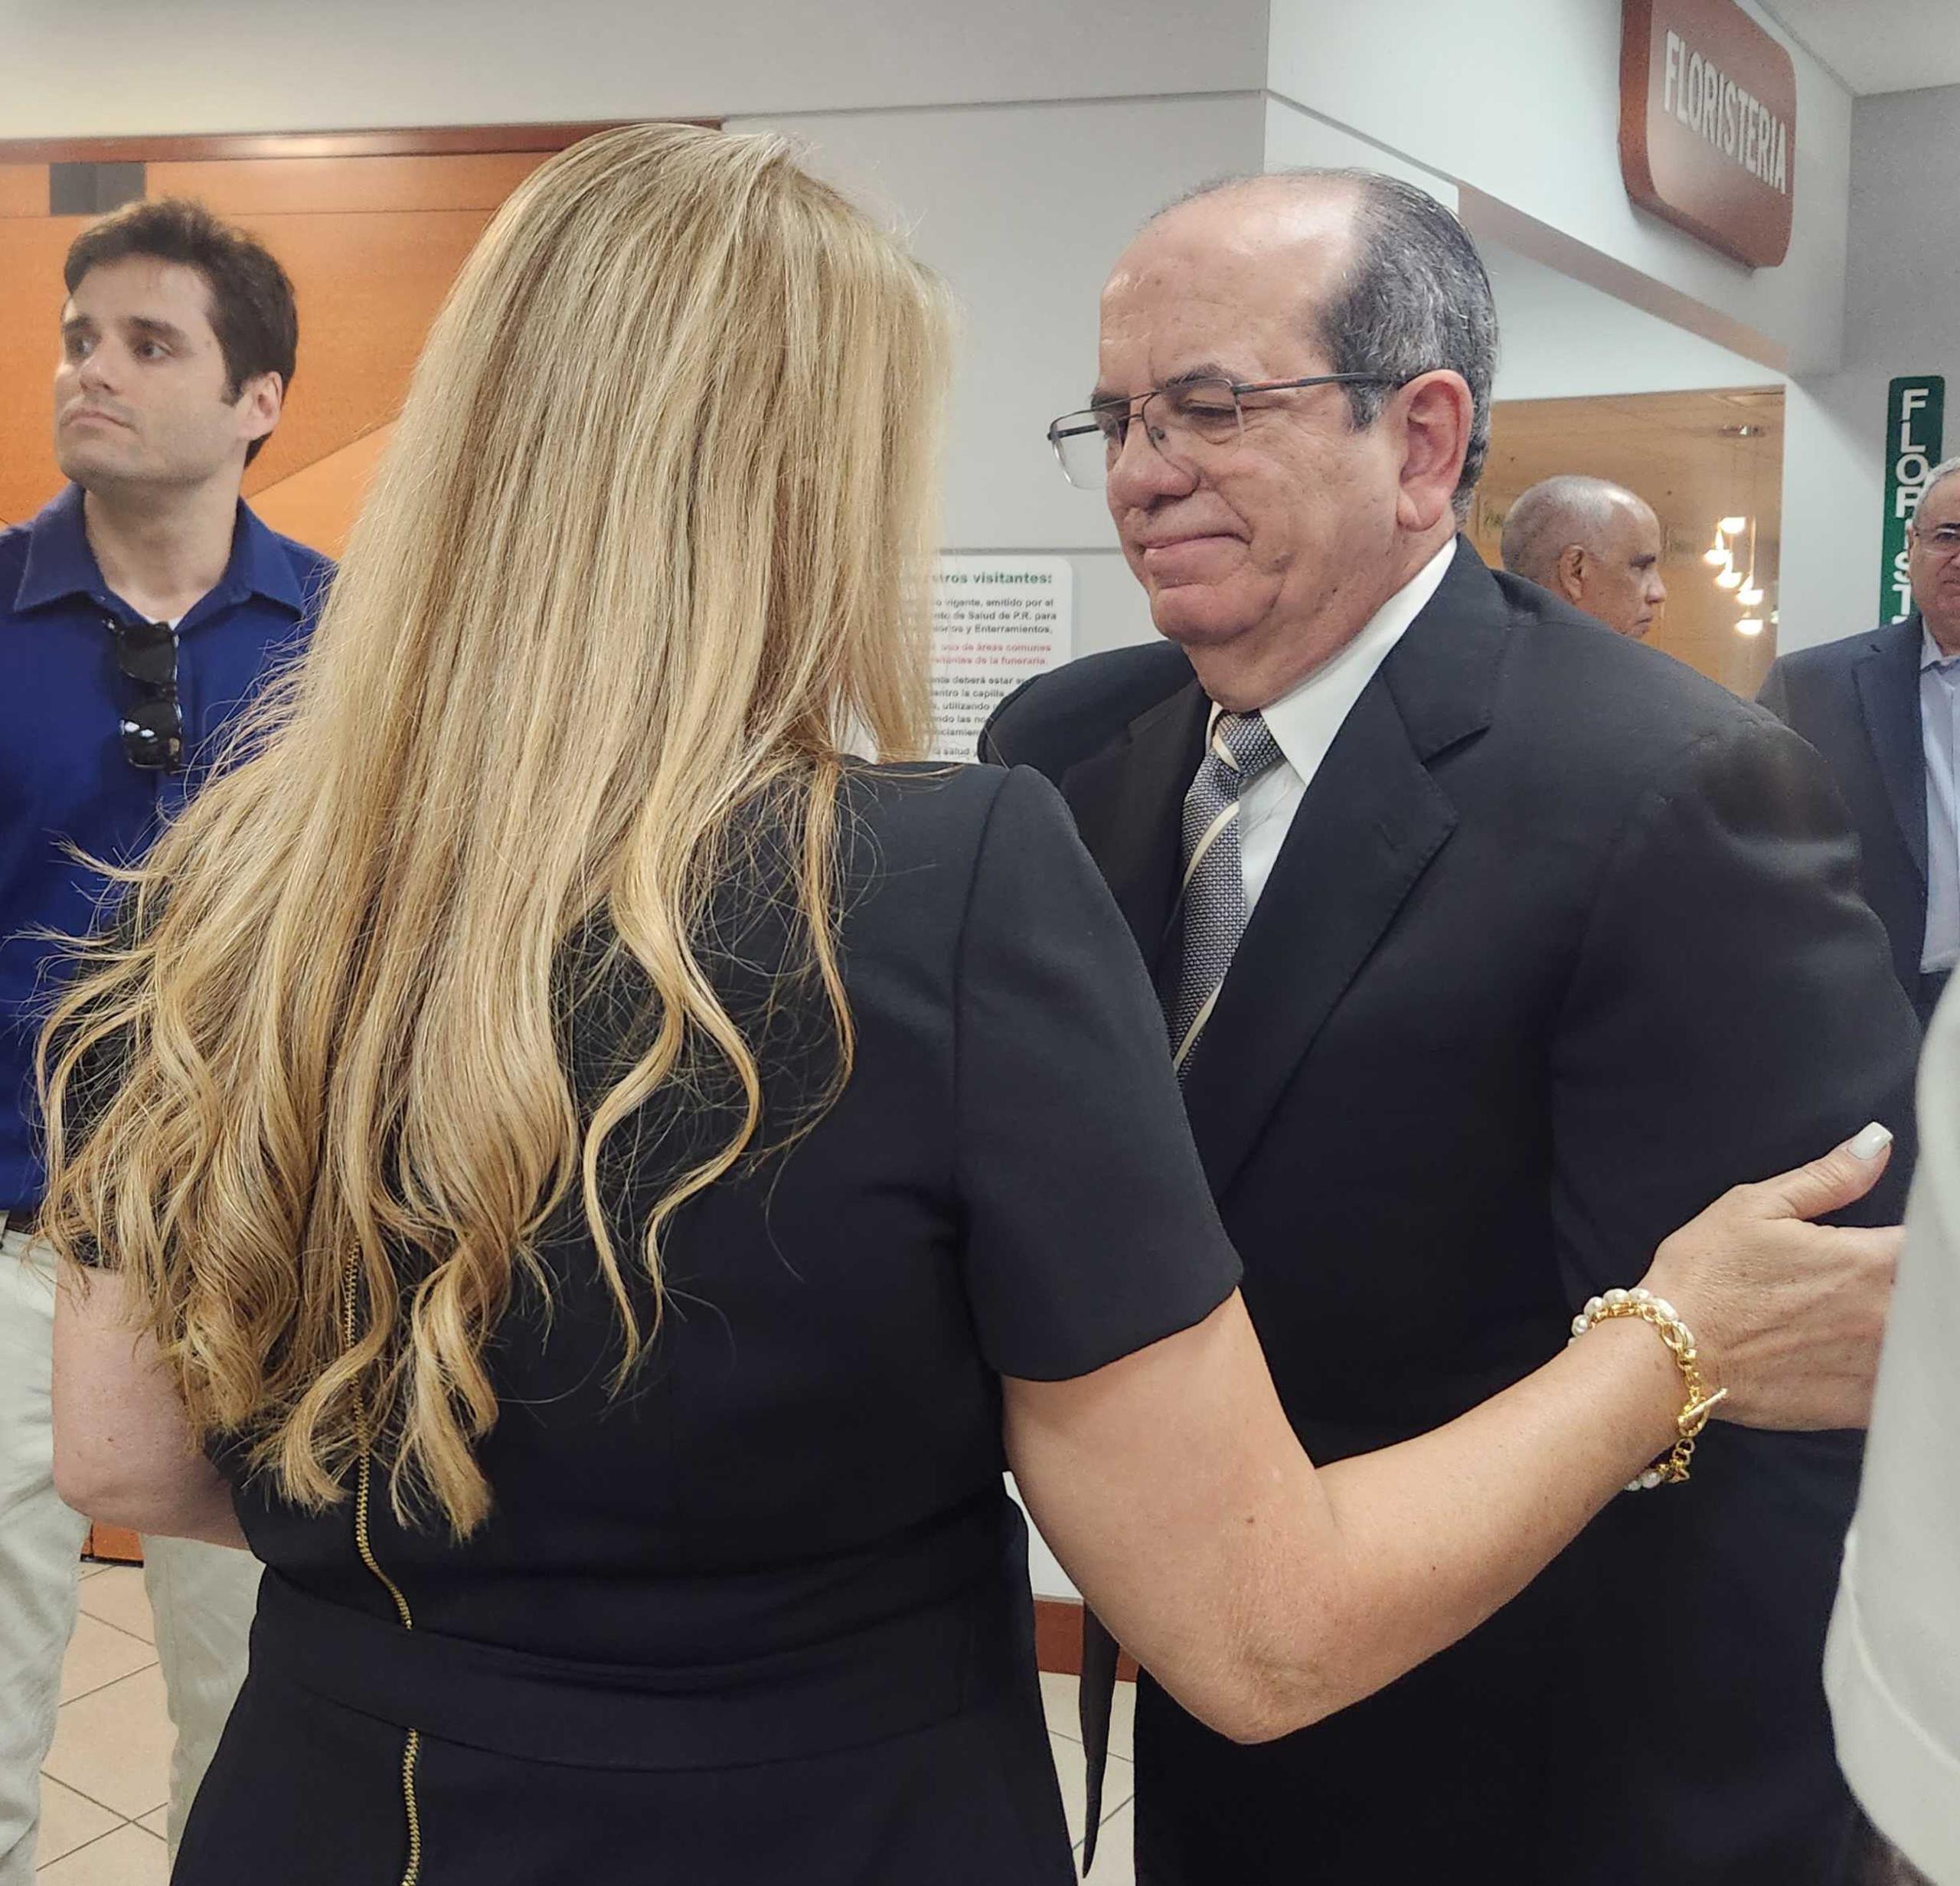 La exgobernadora Wanda Vázquez le extiende sus condolencias al exgobernador Aníbal Acevedo Vilá.